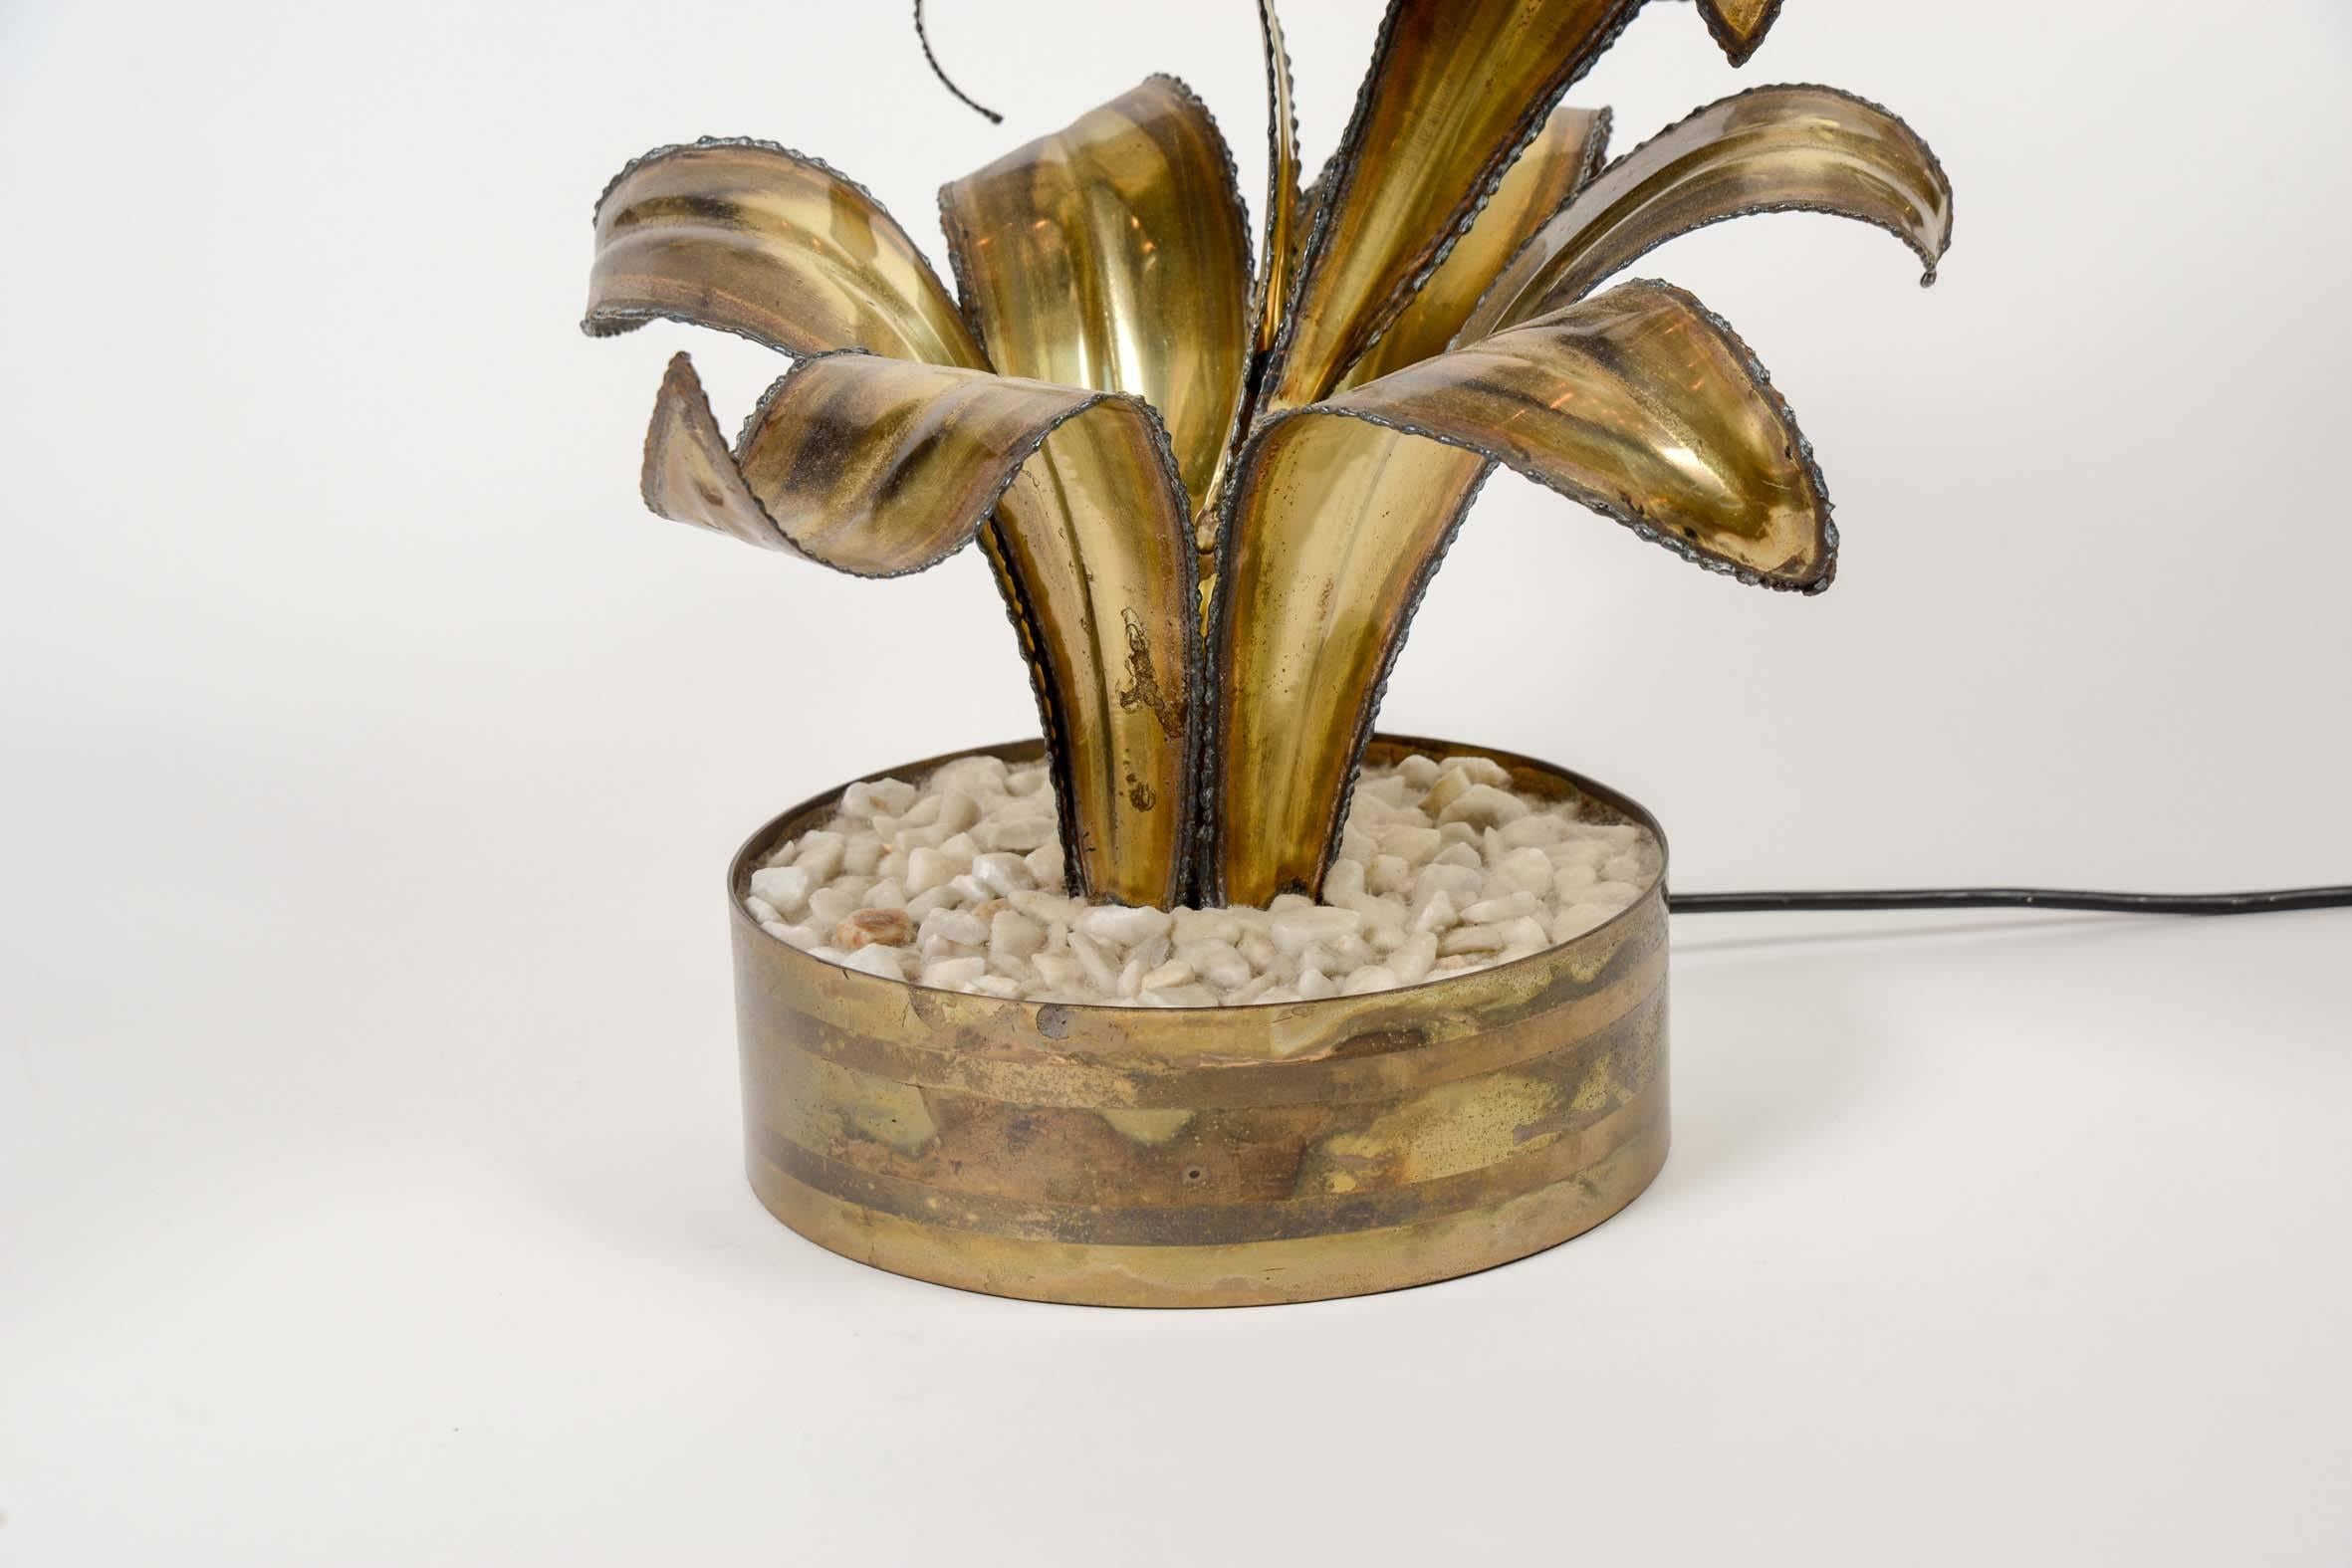 Paire de lampes de table représentant des fleurs avec leurs pétales et leur feuille dans un pot rempli de gravier blanc.

Une source de lumière par lampe.